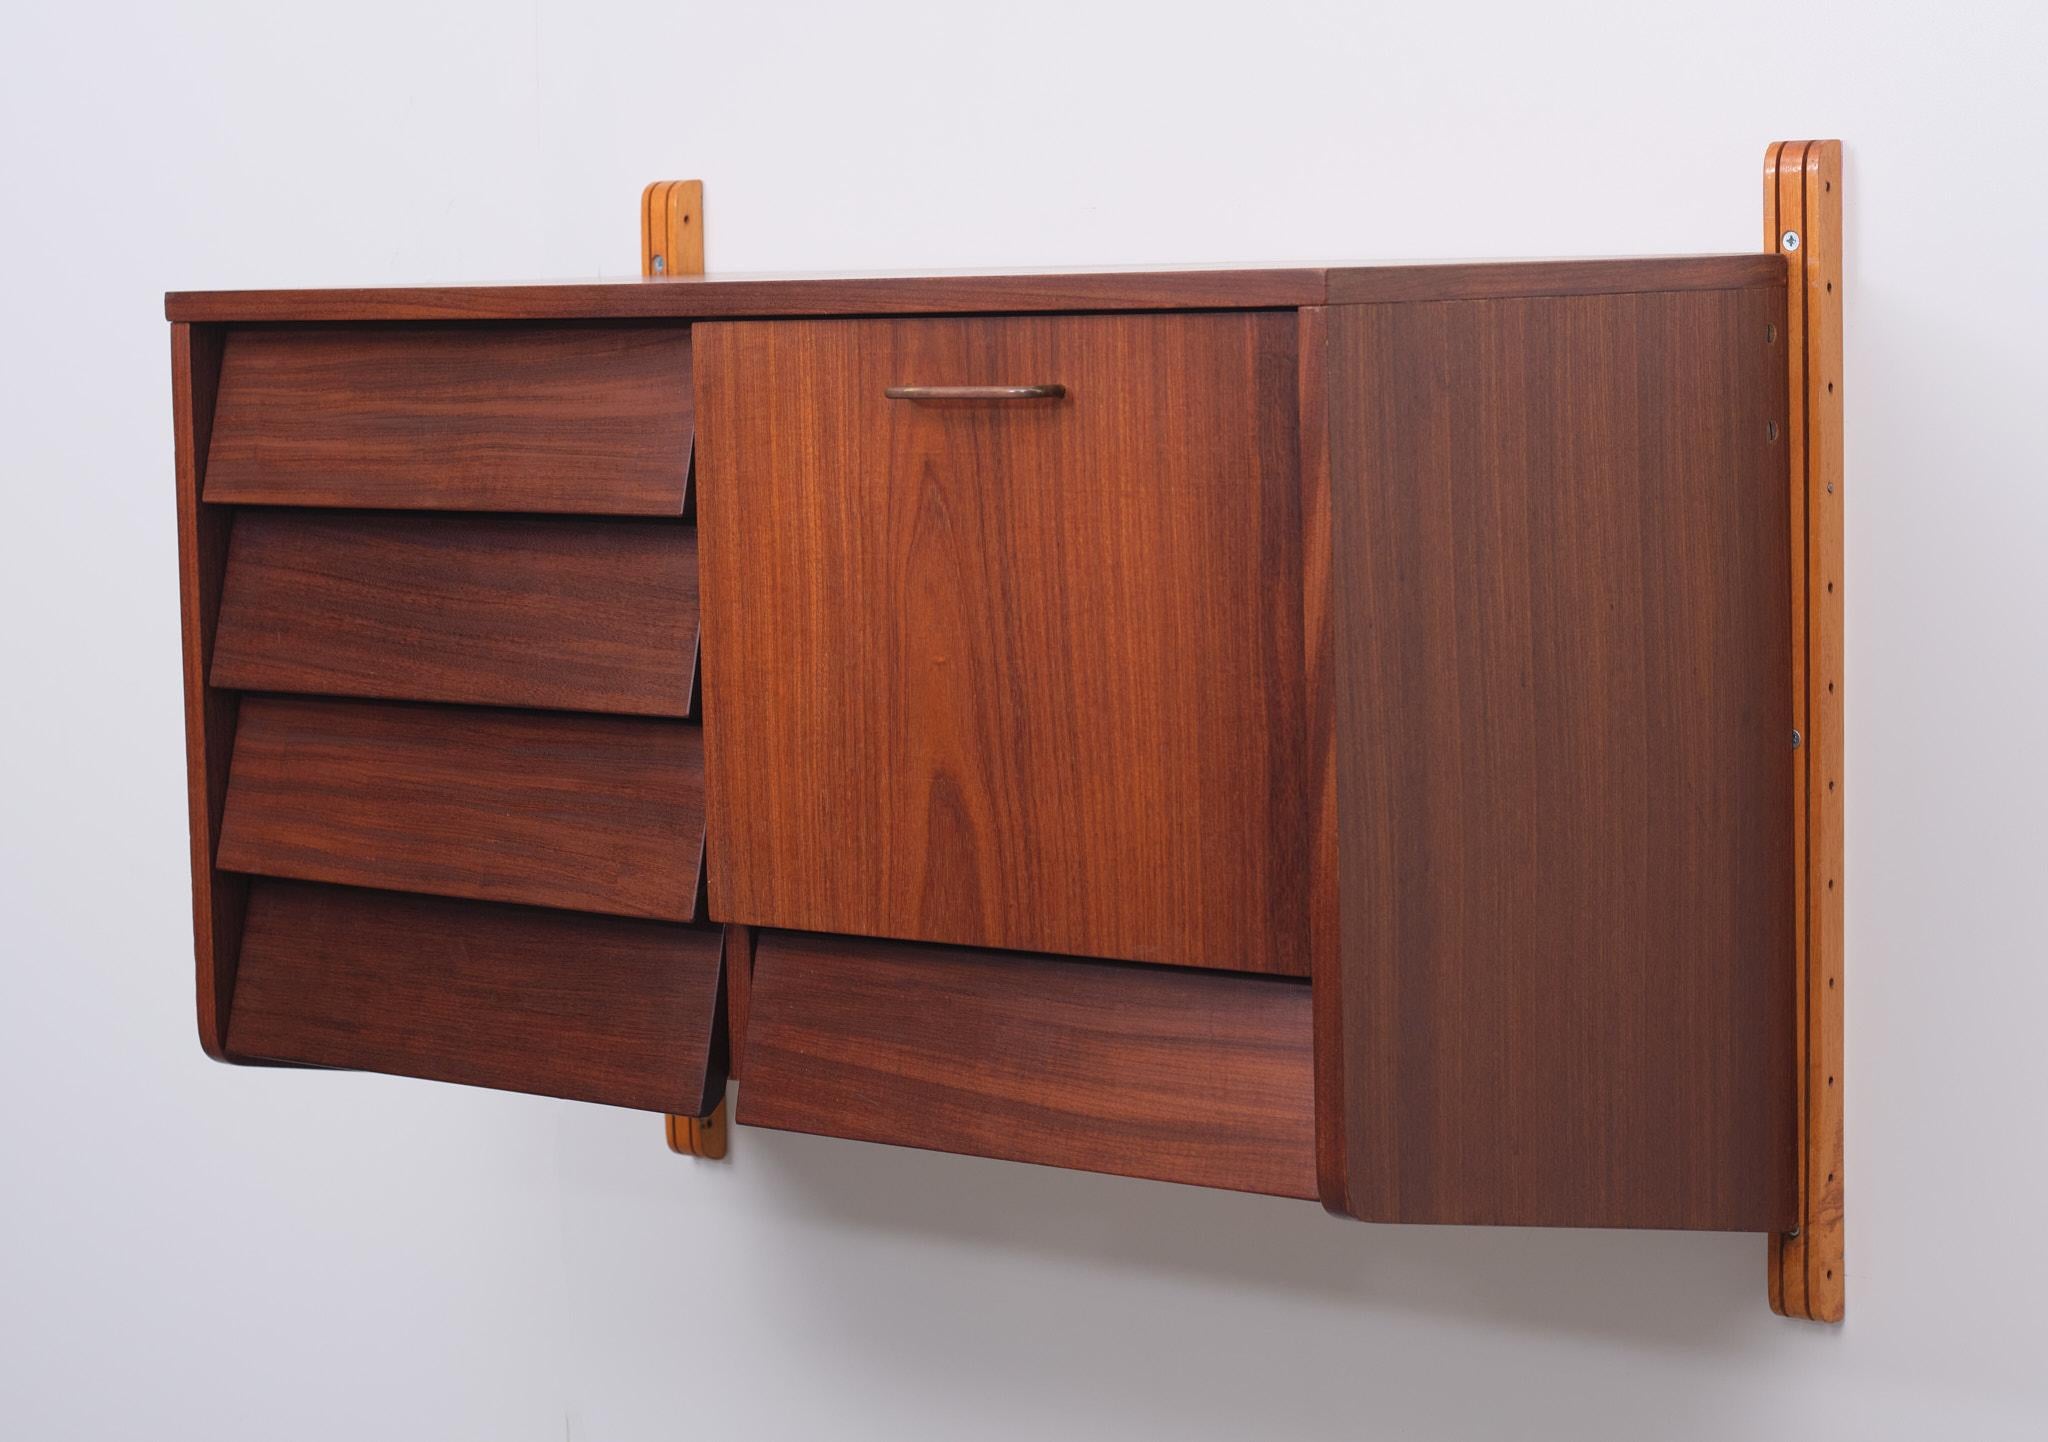 Très belle armoire suspendue en bois de teck. 2 montants 5 tiroirs 1 abattant 
Poignée en laiton. Beaucoup d'espace de rangement. Design néerlandais des années 1960. Très bon état.